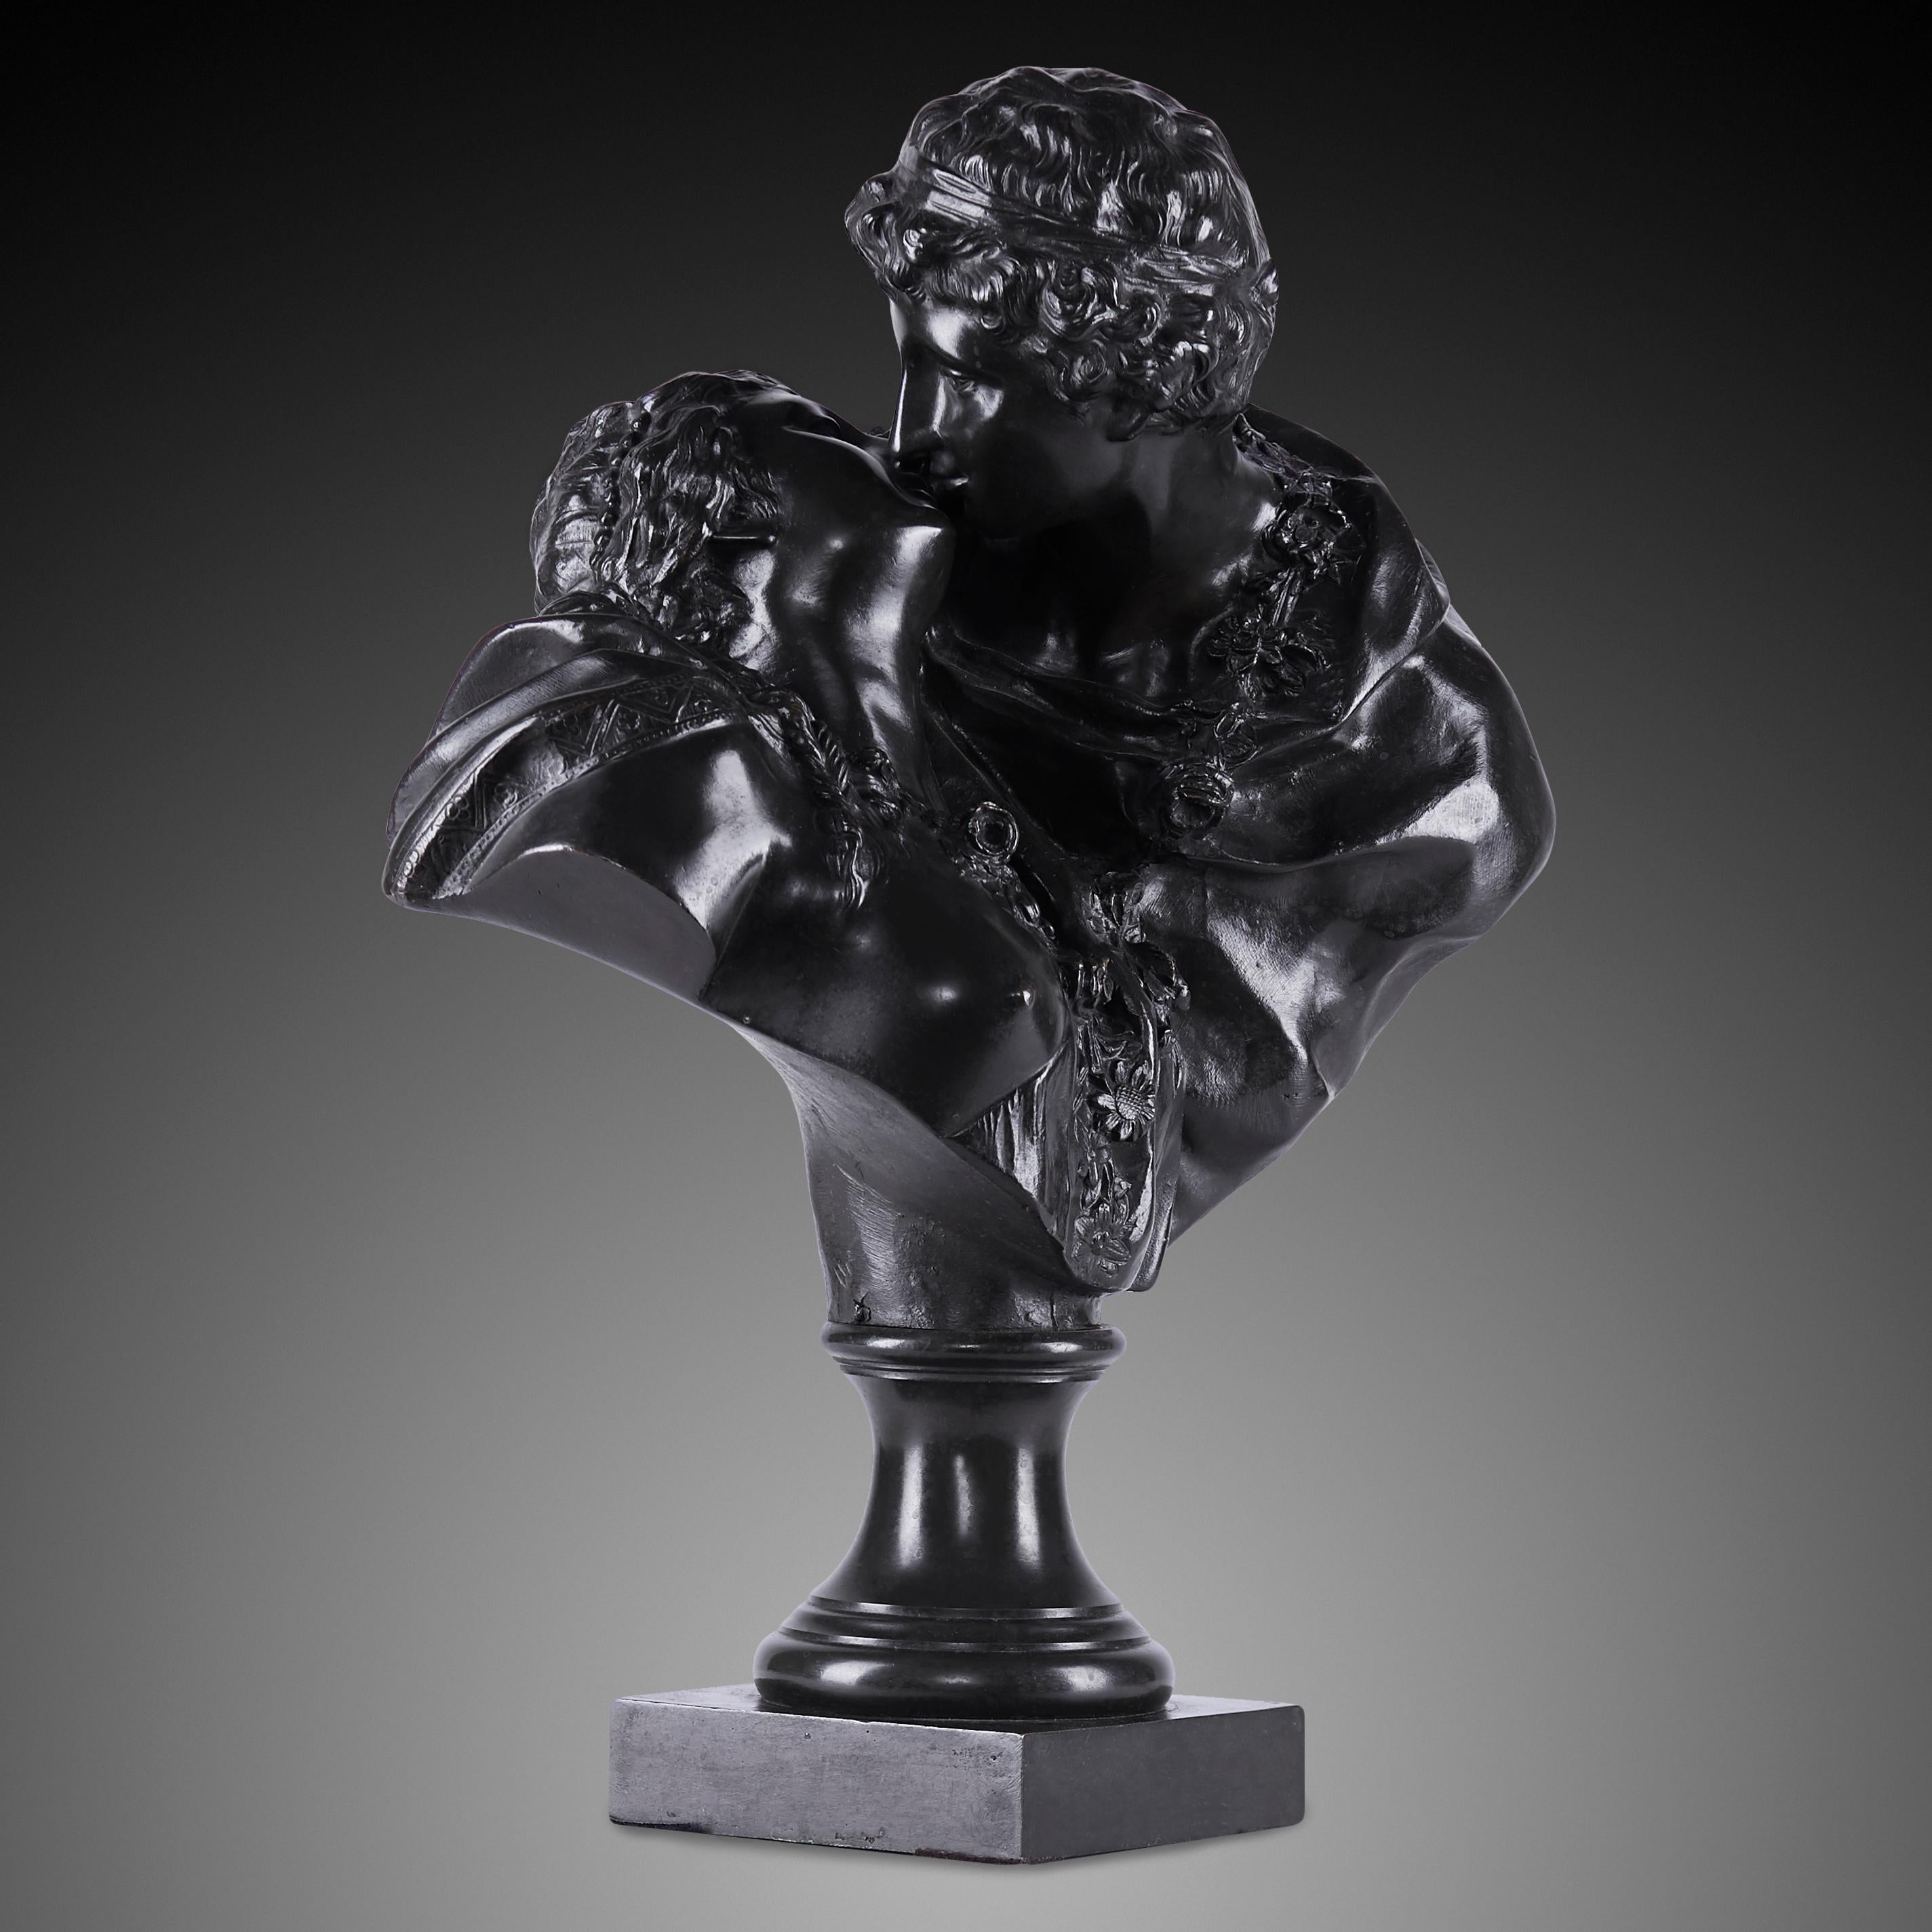 Diese Figur aus Bronze mit brauner Patina stellt ein sich umarmendes und küssendes Paar dar, das von Jean-Antoine Houdon verewigt wurde, einem französischen Bildhauer, dessen religiöse und mythologische Werke den Rokoko-Stil des 18. Auch Elemente